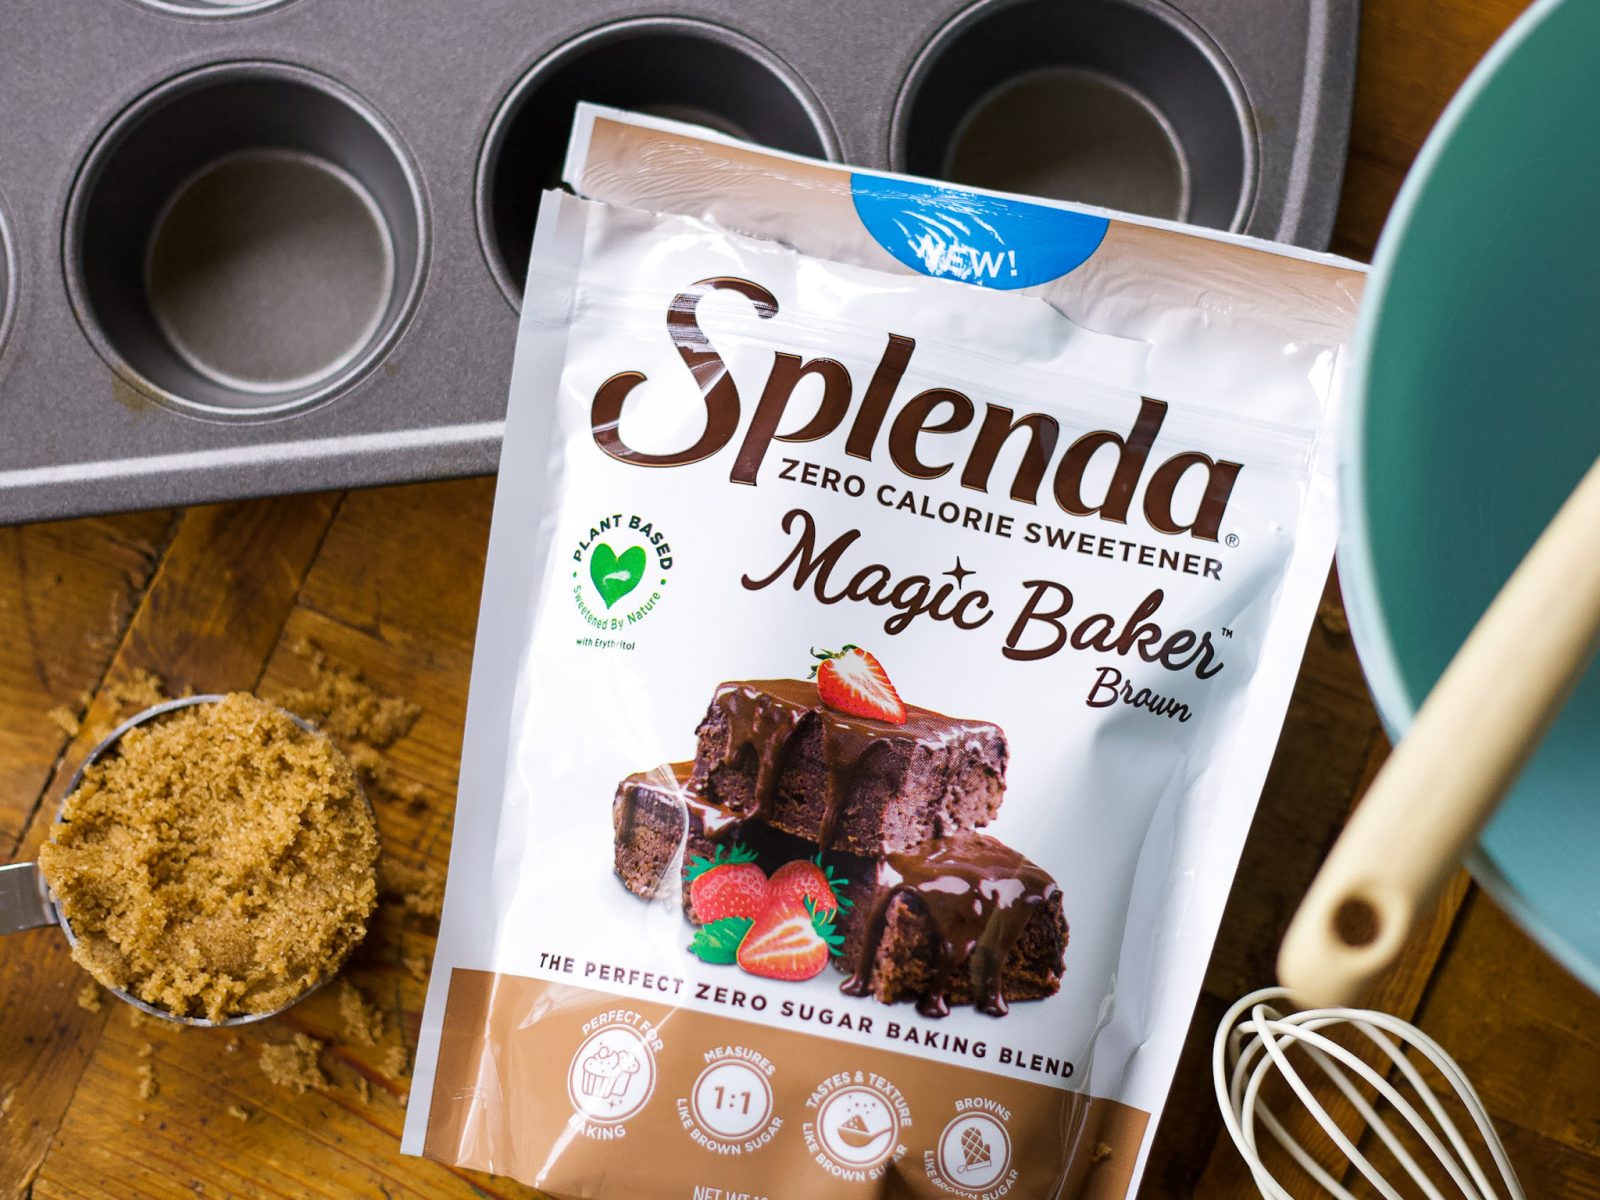 Save $4 On The Bags Of Splenda Magic Baker Sweetener At Kroger